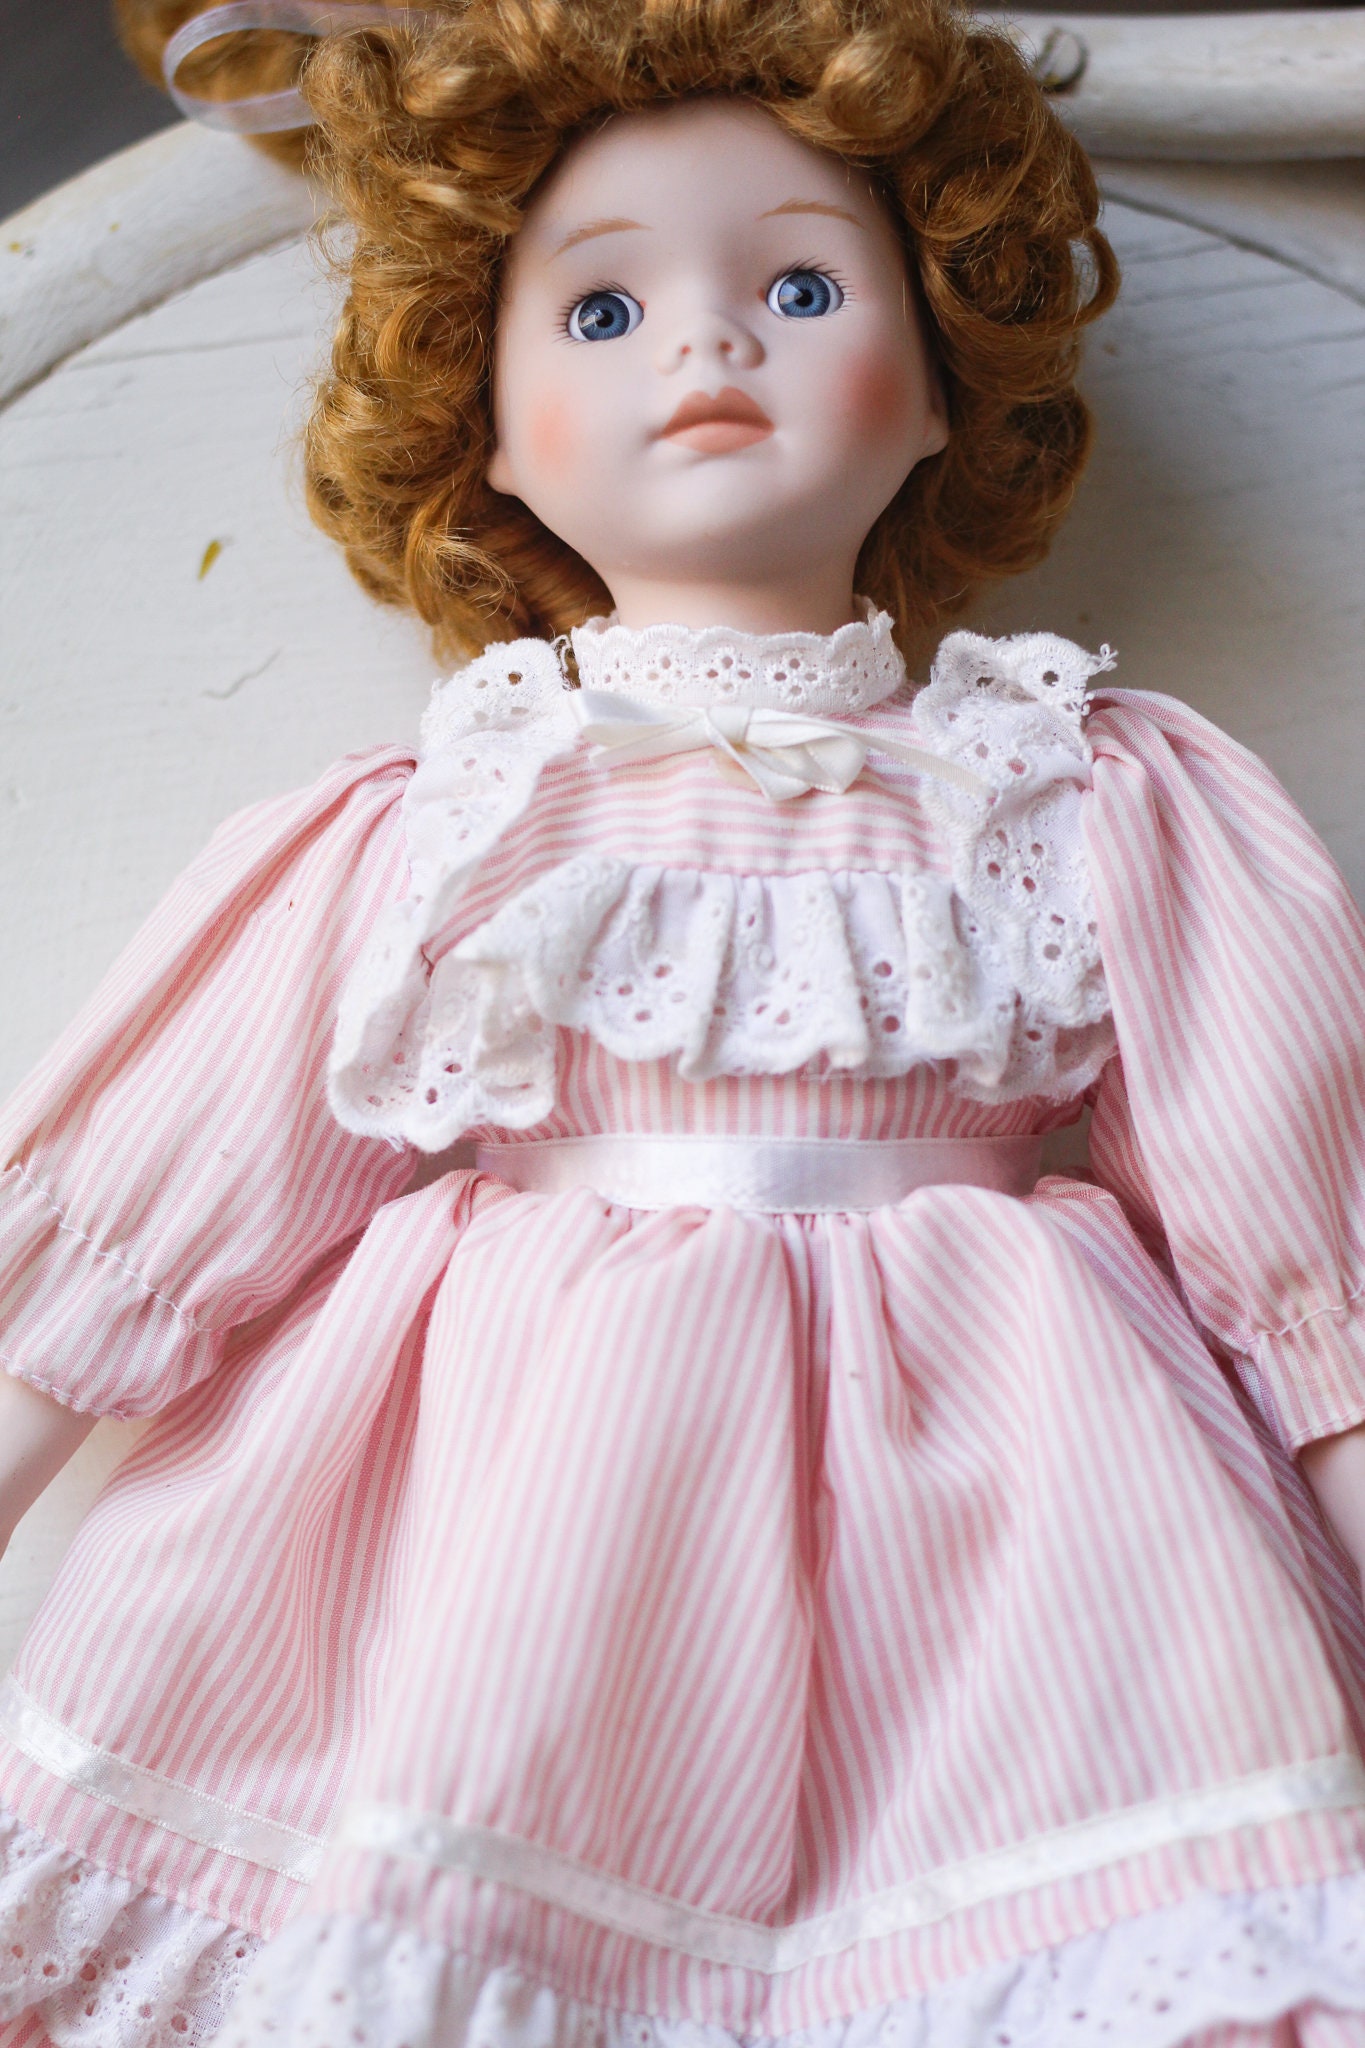 Vintage 1989 House of Lloyd Porcelain Doll in Pink Gingham | Etsy